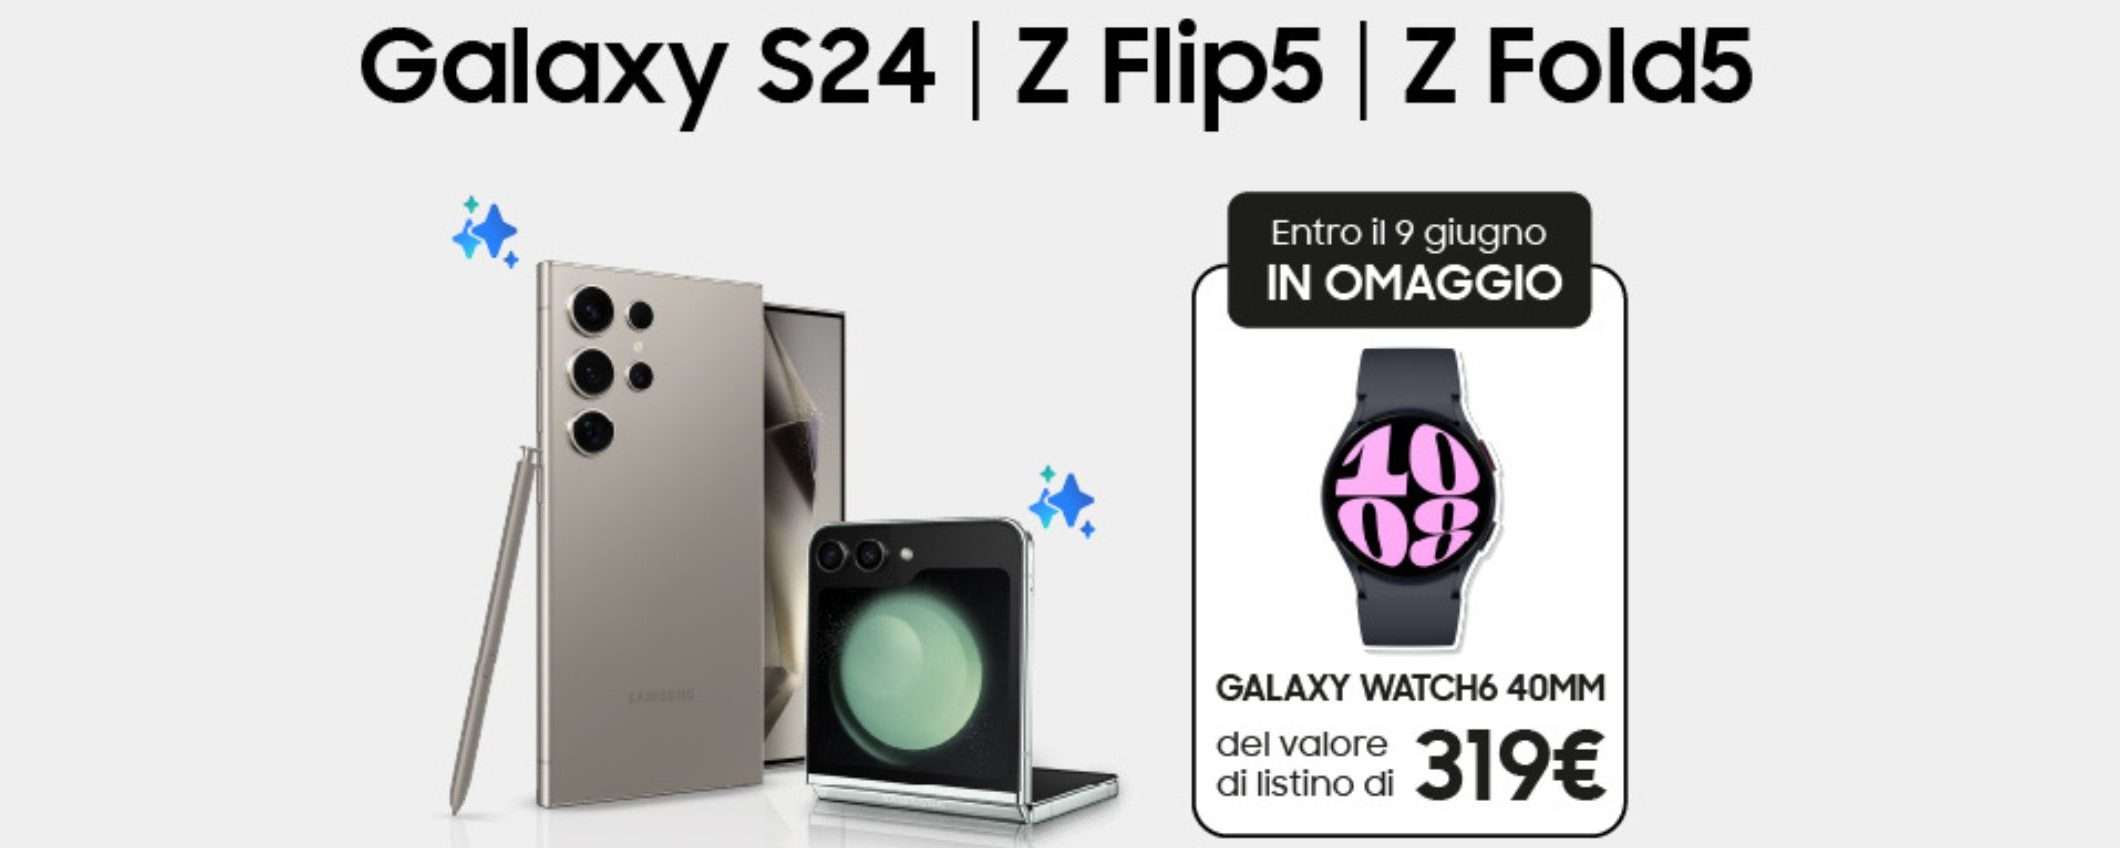 Samsung Galaxy Watch6 GRATIS con l'acquisto di Galaxy S24, Z Fold5 e Flip5